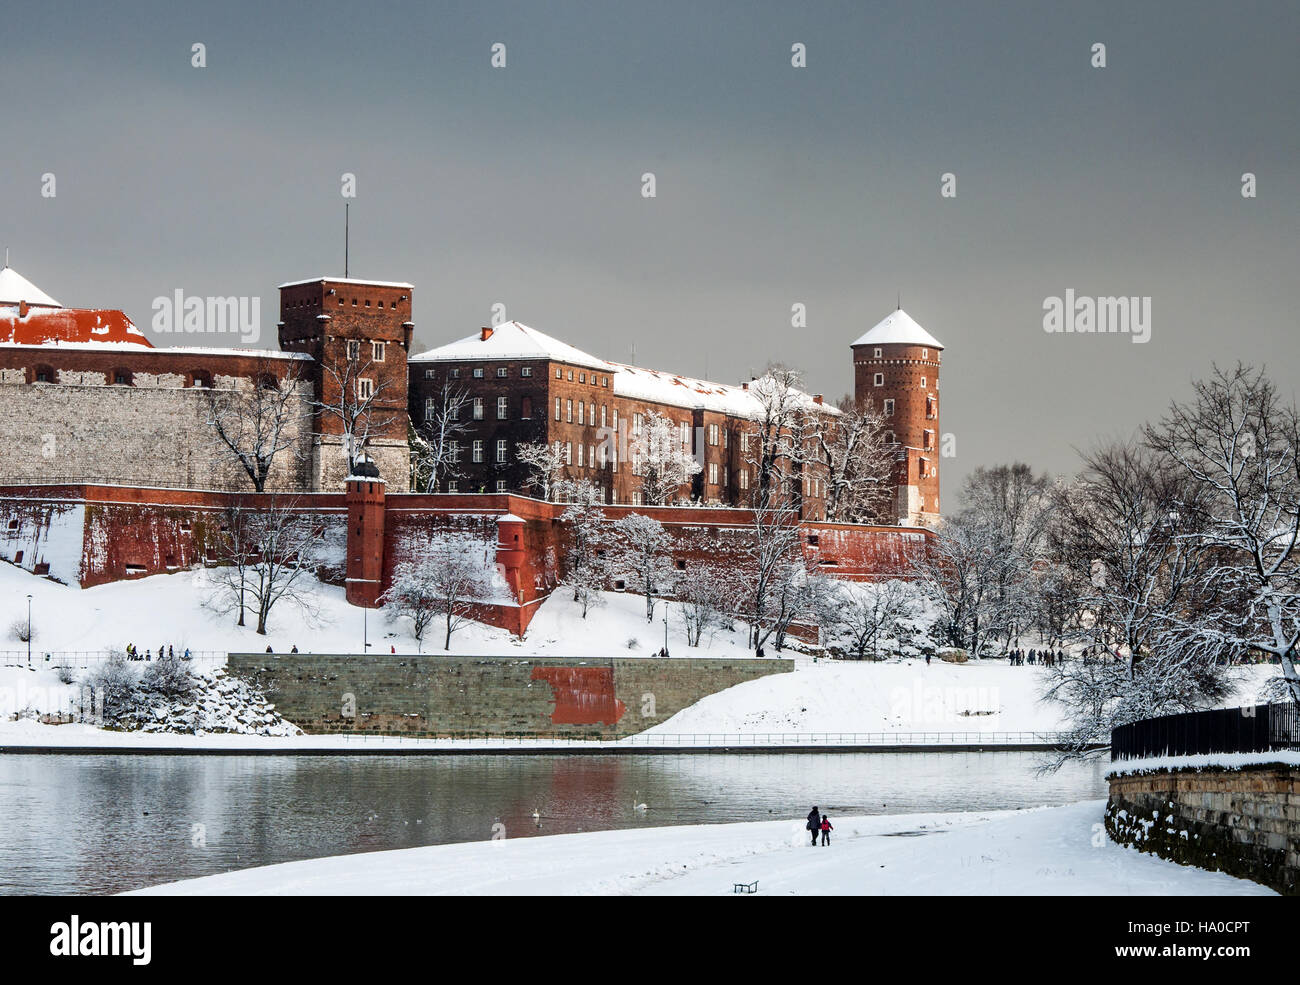 Fragment de l'historique royal de Wawel avec Sandomierska Tower et défensives wail à Cracovie, en Pologne, avec la rivière Vistule Banque D'Images